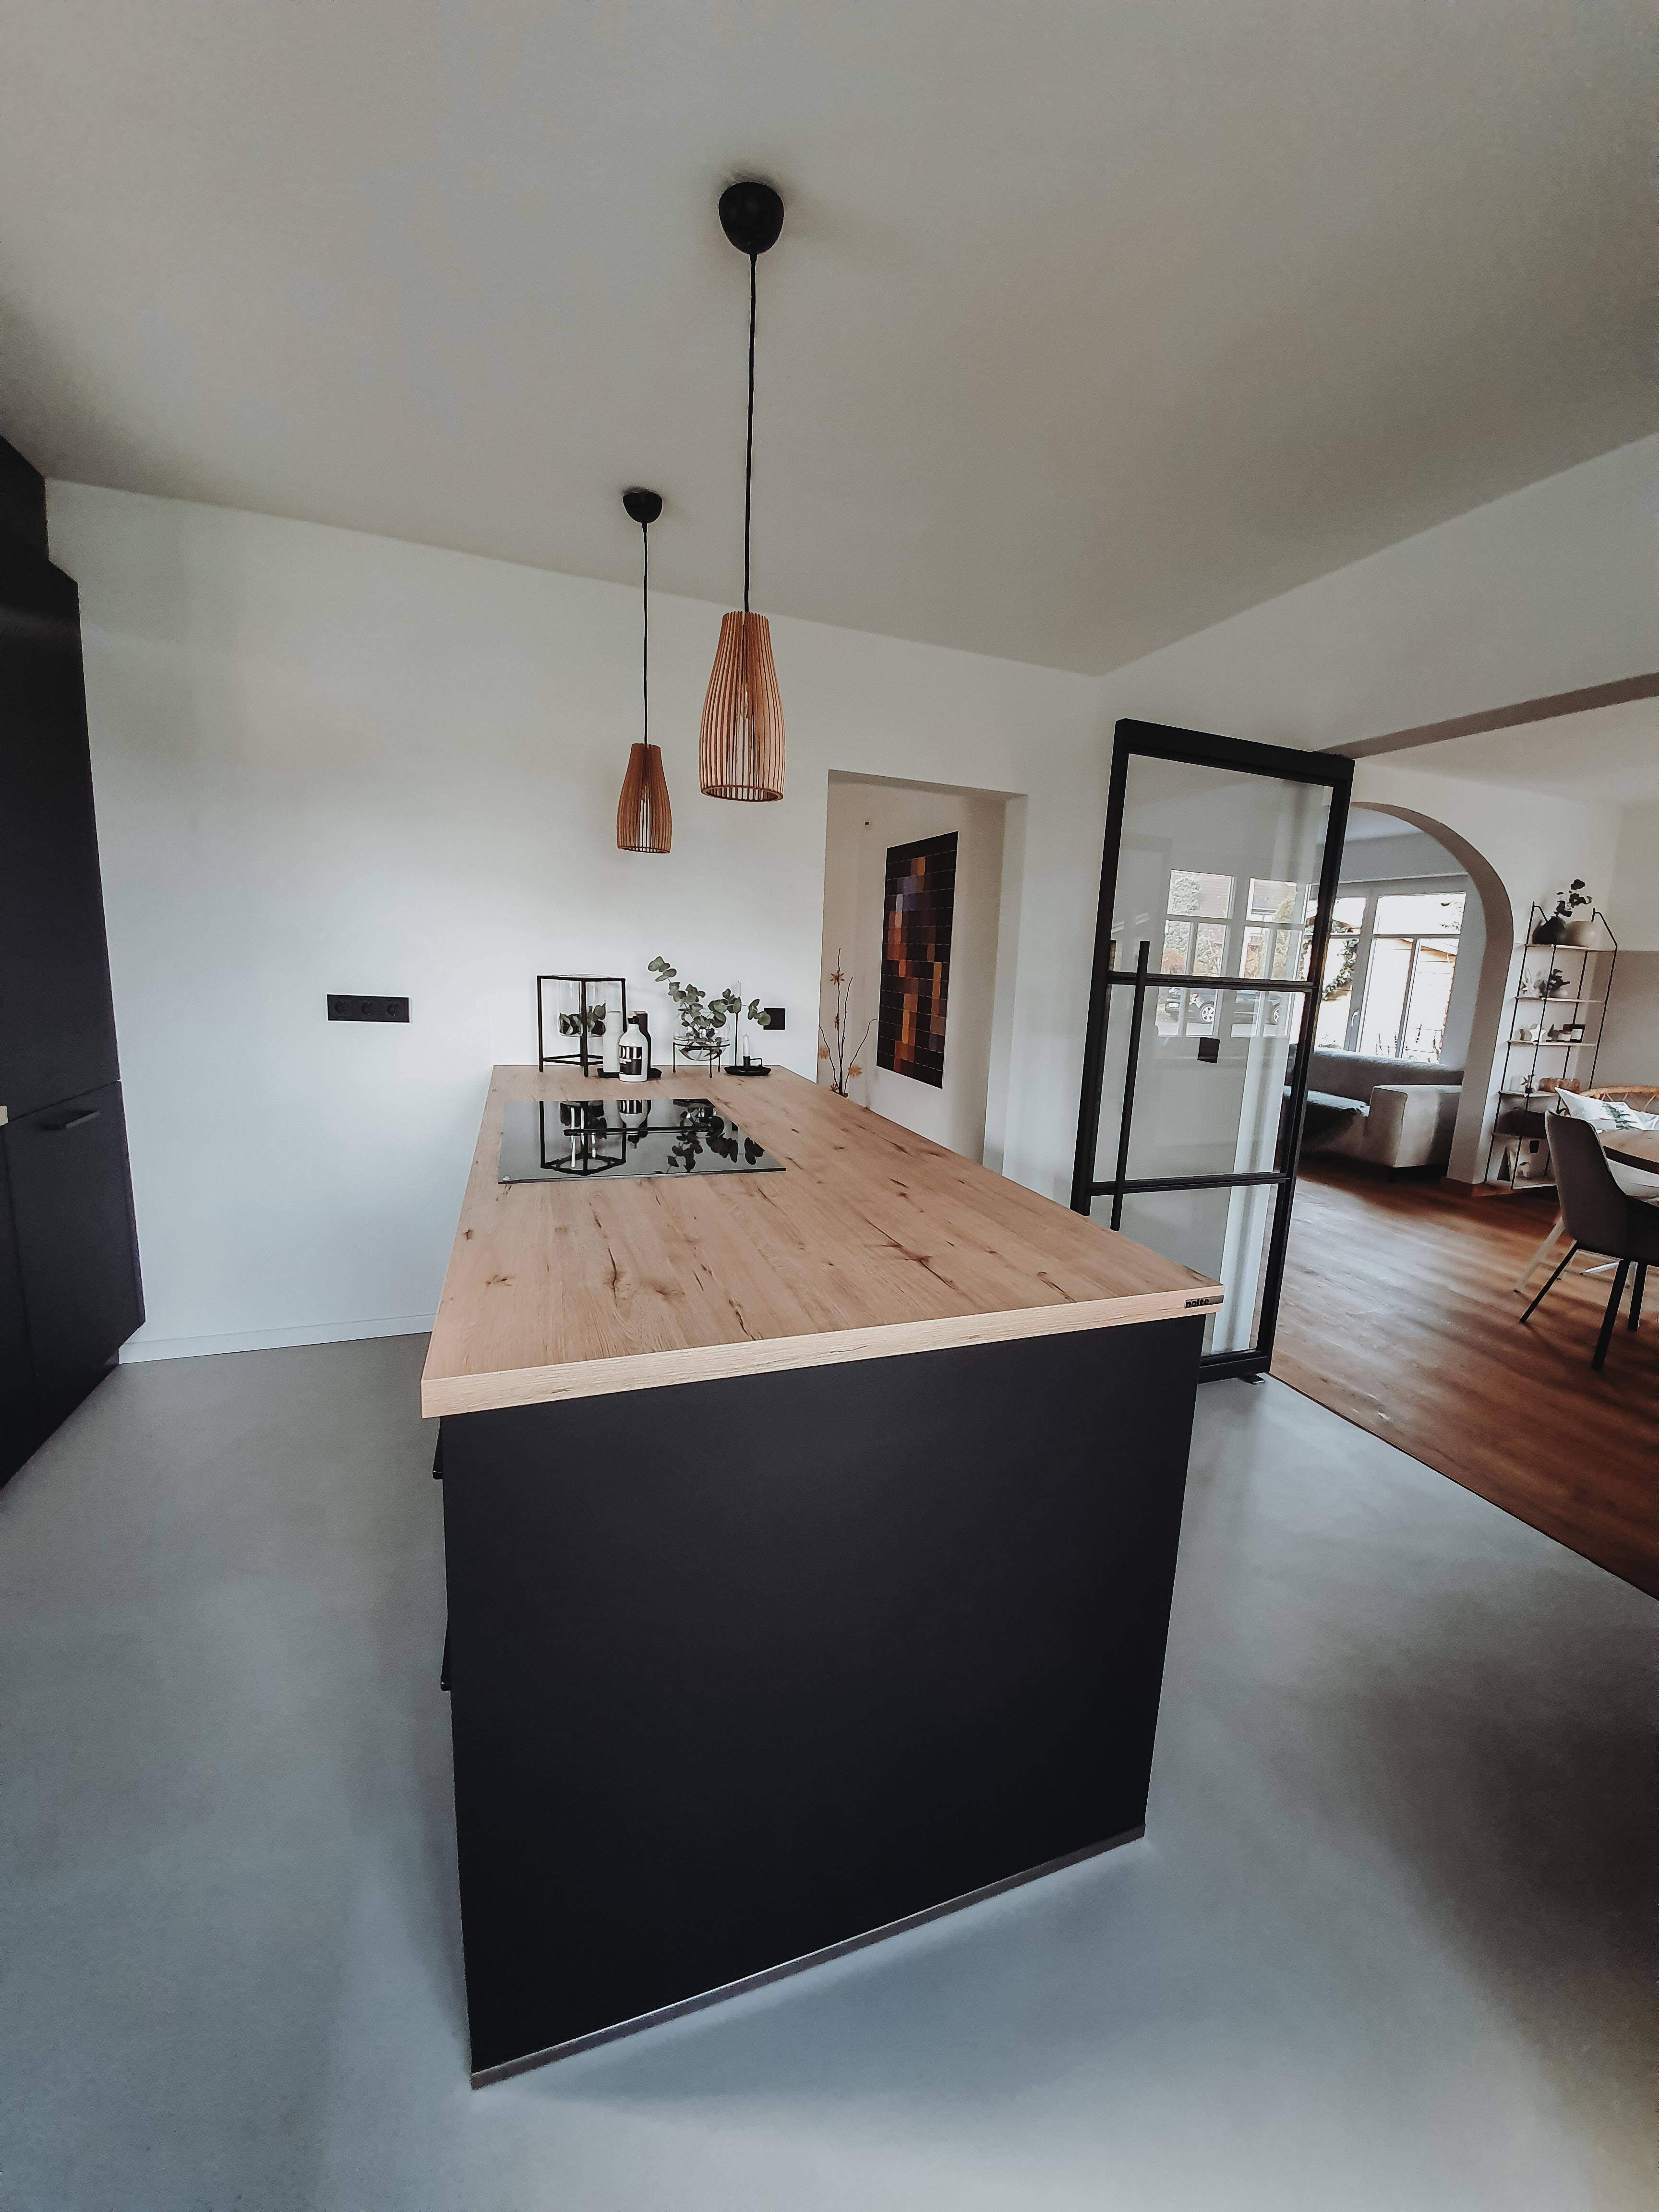 🖤
 #küche #skandinavianhome #betonboden #COUCHmagazin #COUCHstyle #meinwohnzimmer #livingroom #schwarzeküche 